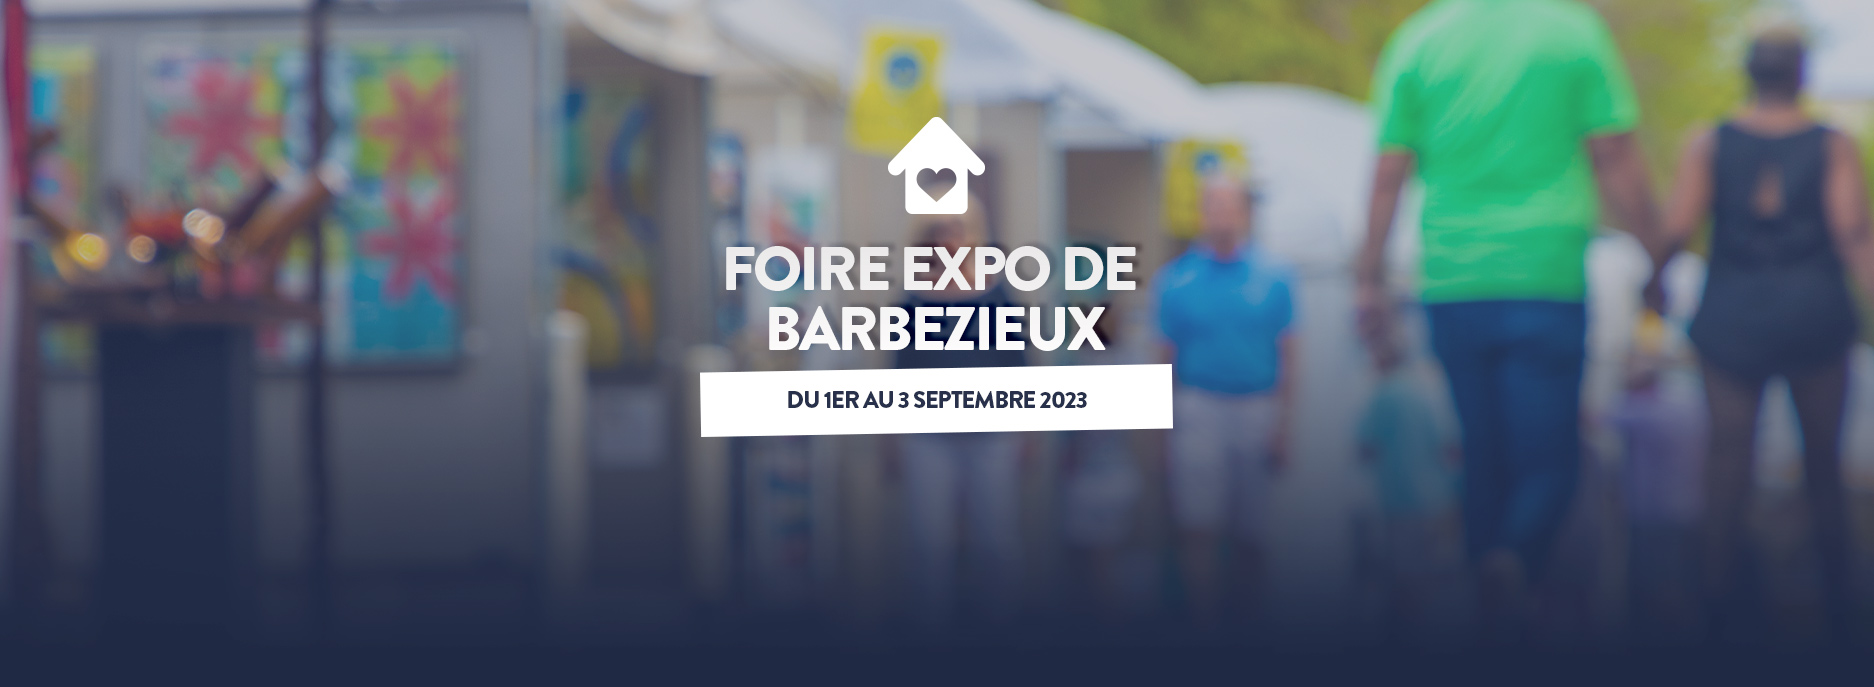 edition 2023 foire expo barbezieux babeau seguin